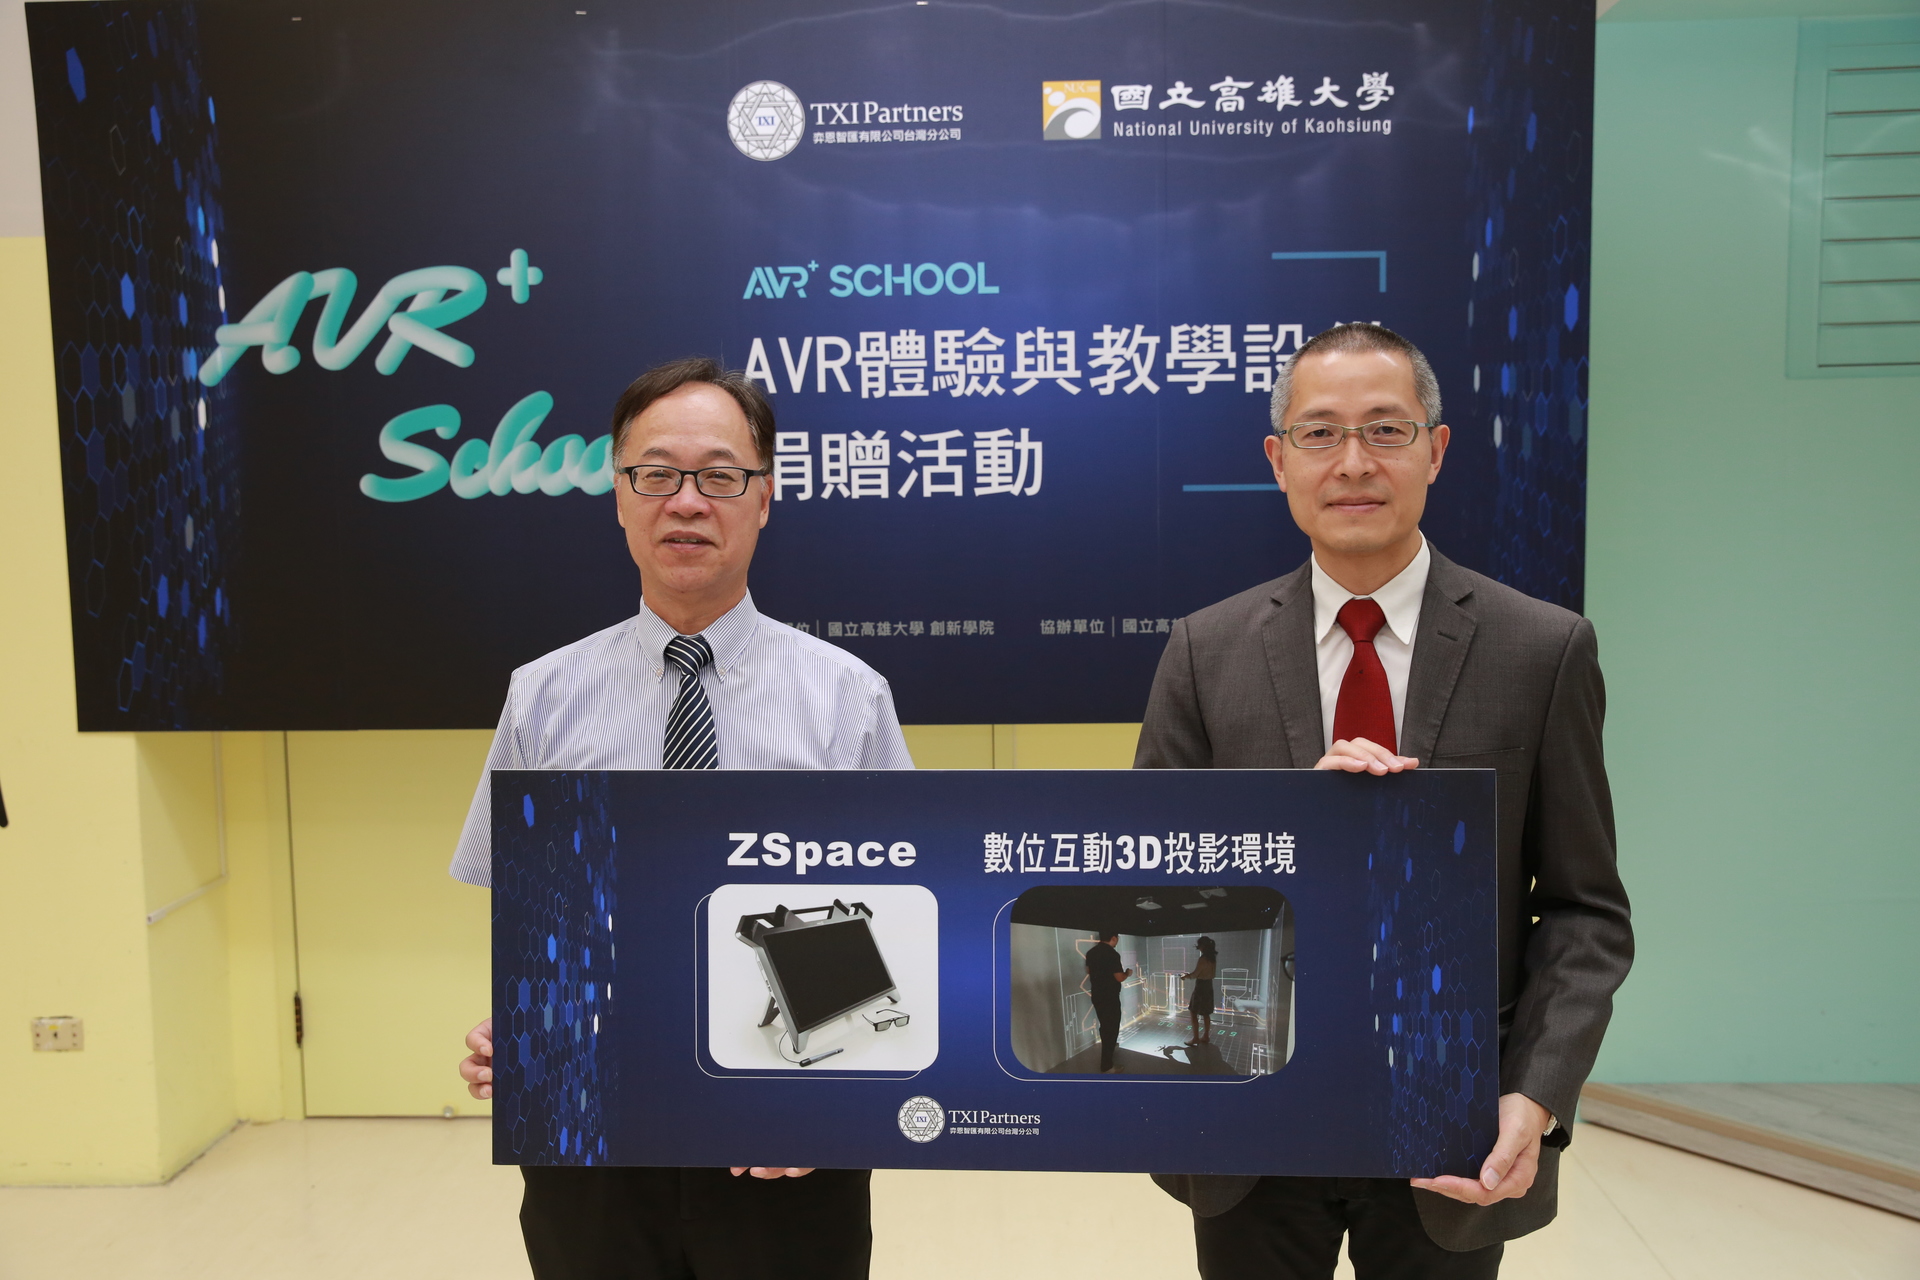 高雄大學校長王學亮（左）、TXI Partners 執行董事鄭瑞羲代表雙方受（捐）贈，所捐贈設備為數位互動3D投影環境、ZSpace。